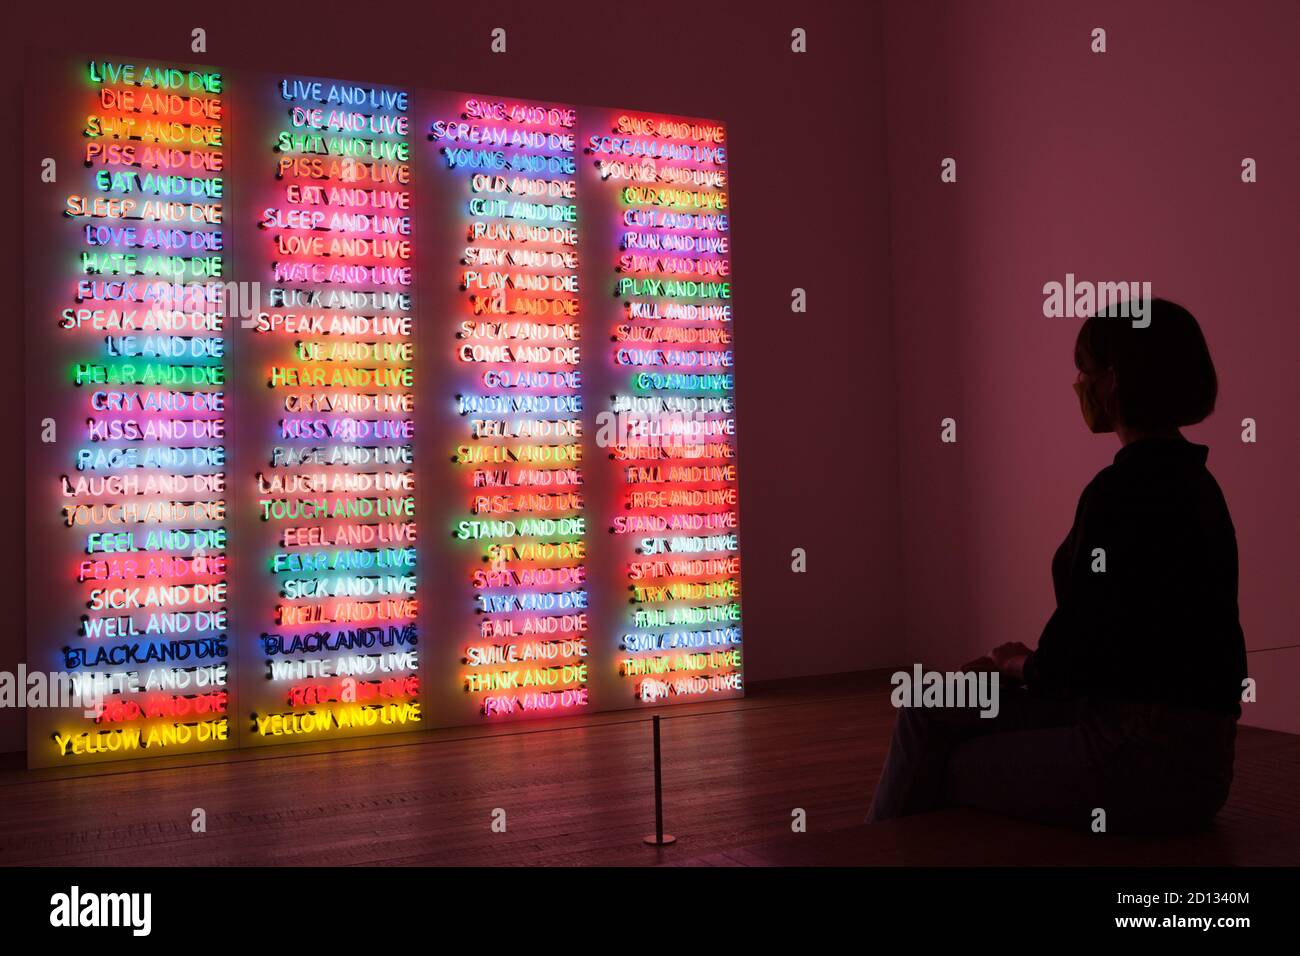 Londra, Regno Unito, 5 ottobre 2020: Il lavoro dell'artista americano Bruce Nauman viene esaminato in una nuova mostra a Tate Modern, Londra. Con proiezioni, neon, installazioni video e sculture, l'opera in evidenza risale agli anni '60 in poi. 'One Hundred Live and Die' è dal 1984. Rachel Royse/Alamy Live News Foto Stock